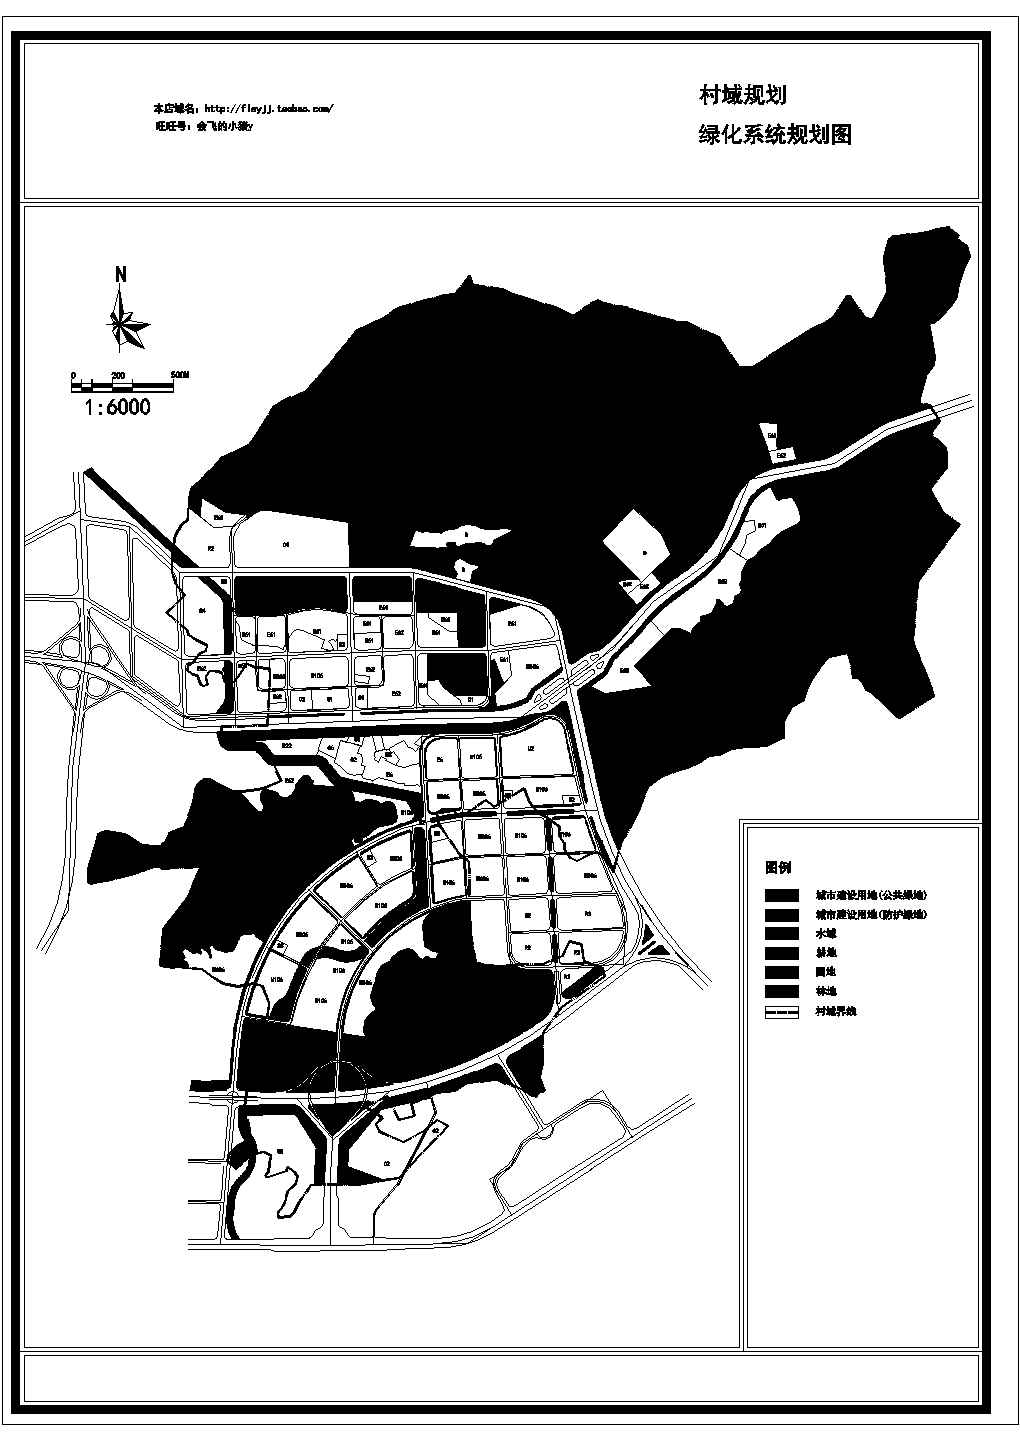 村域总体规划4个CAD【土地利用规划图 土地利用现状图 绿化系统规划图 道路系统规划图 道路断面图】cad图纸